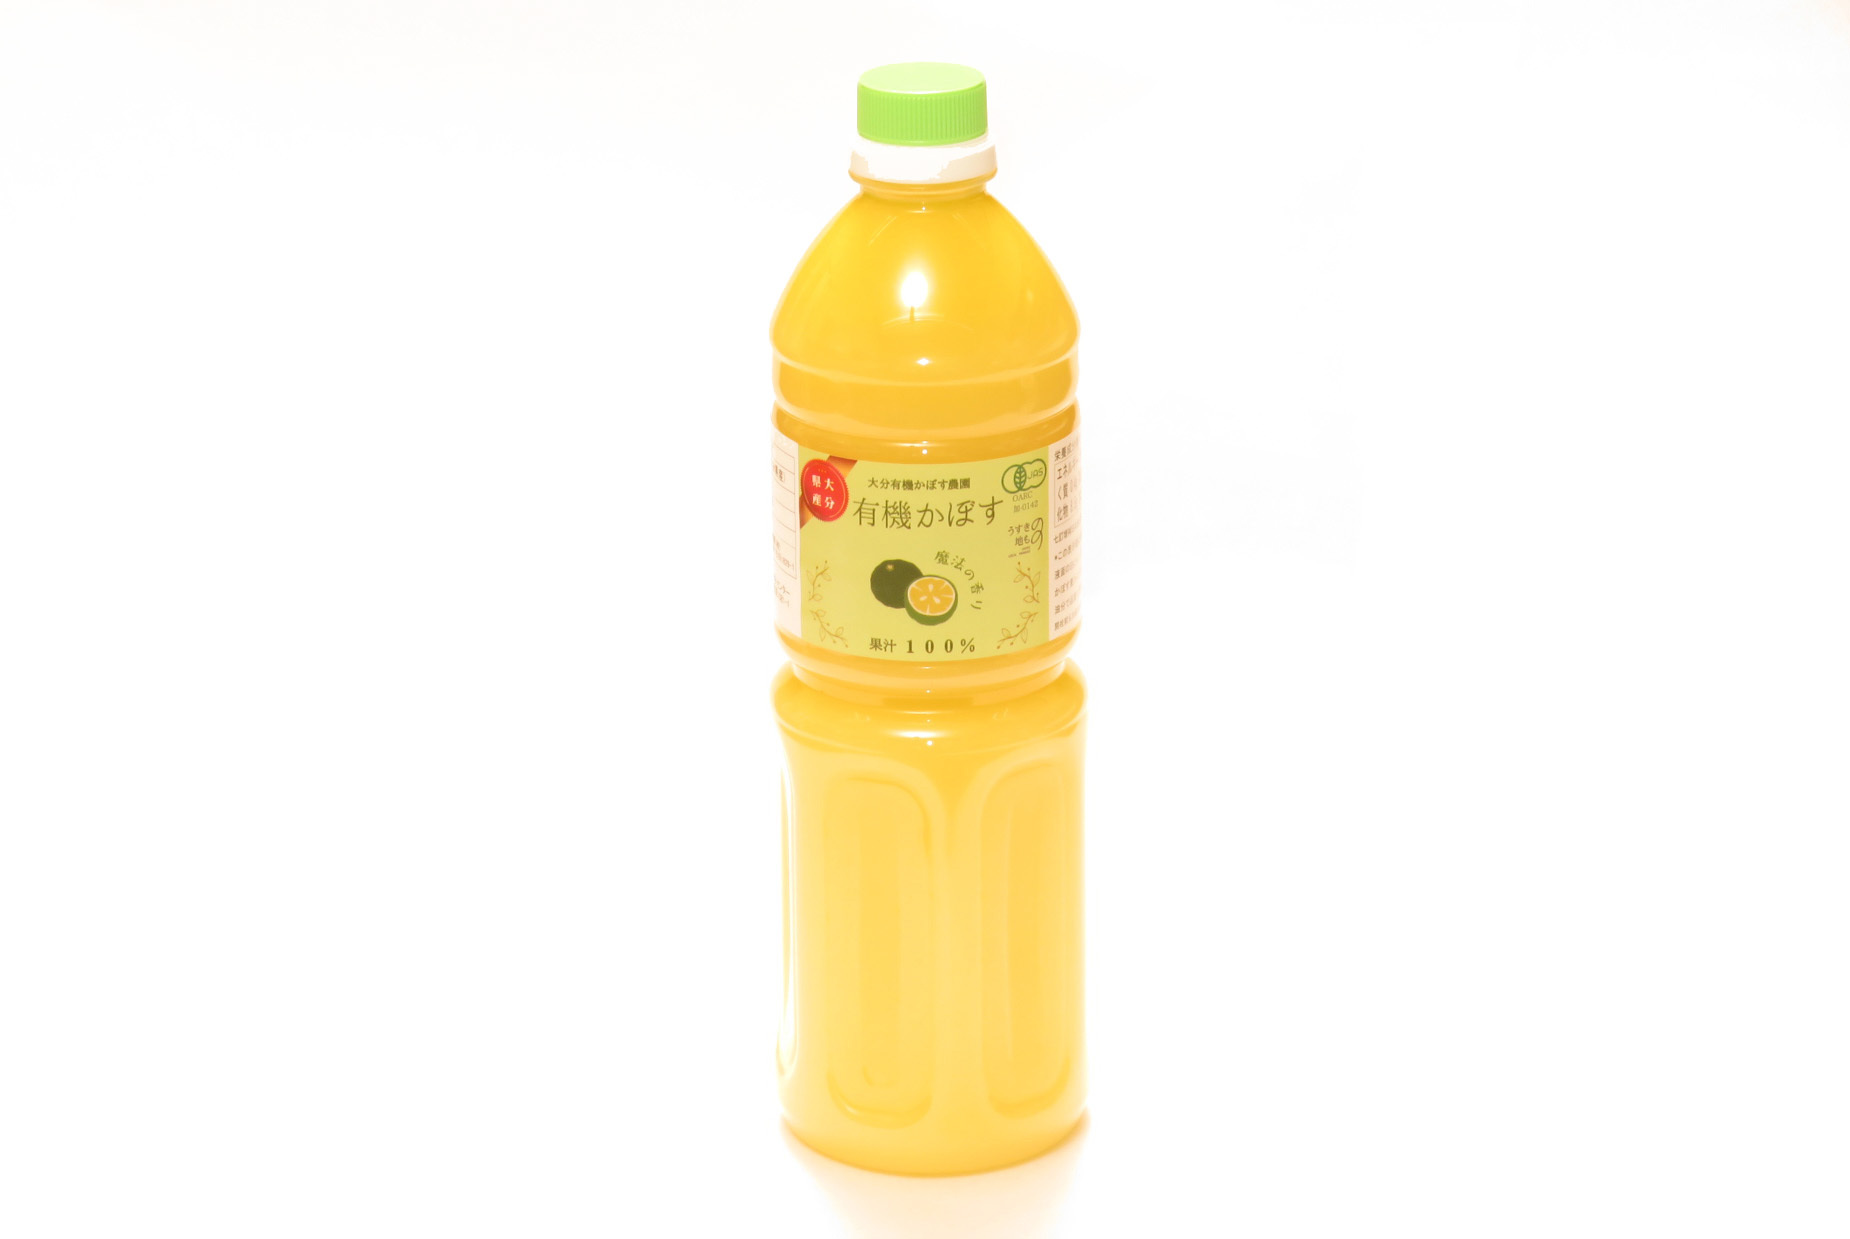 画像1: 大分県産 有機かぼす果汁100% [魔法の香り] 1000ml 　(有機JAS認証) (1)